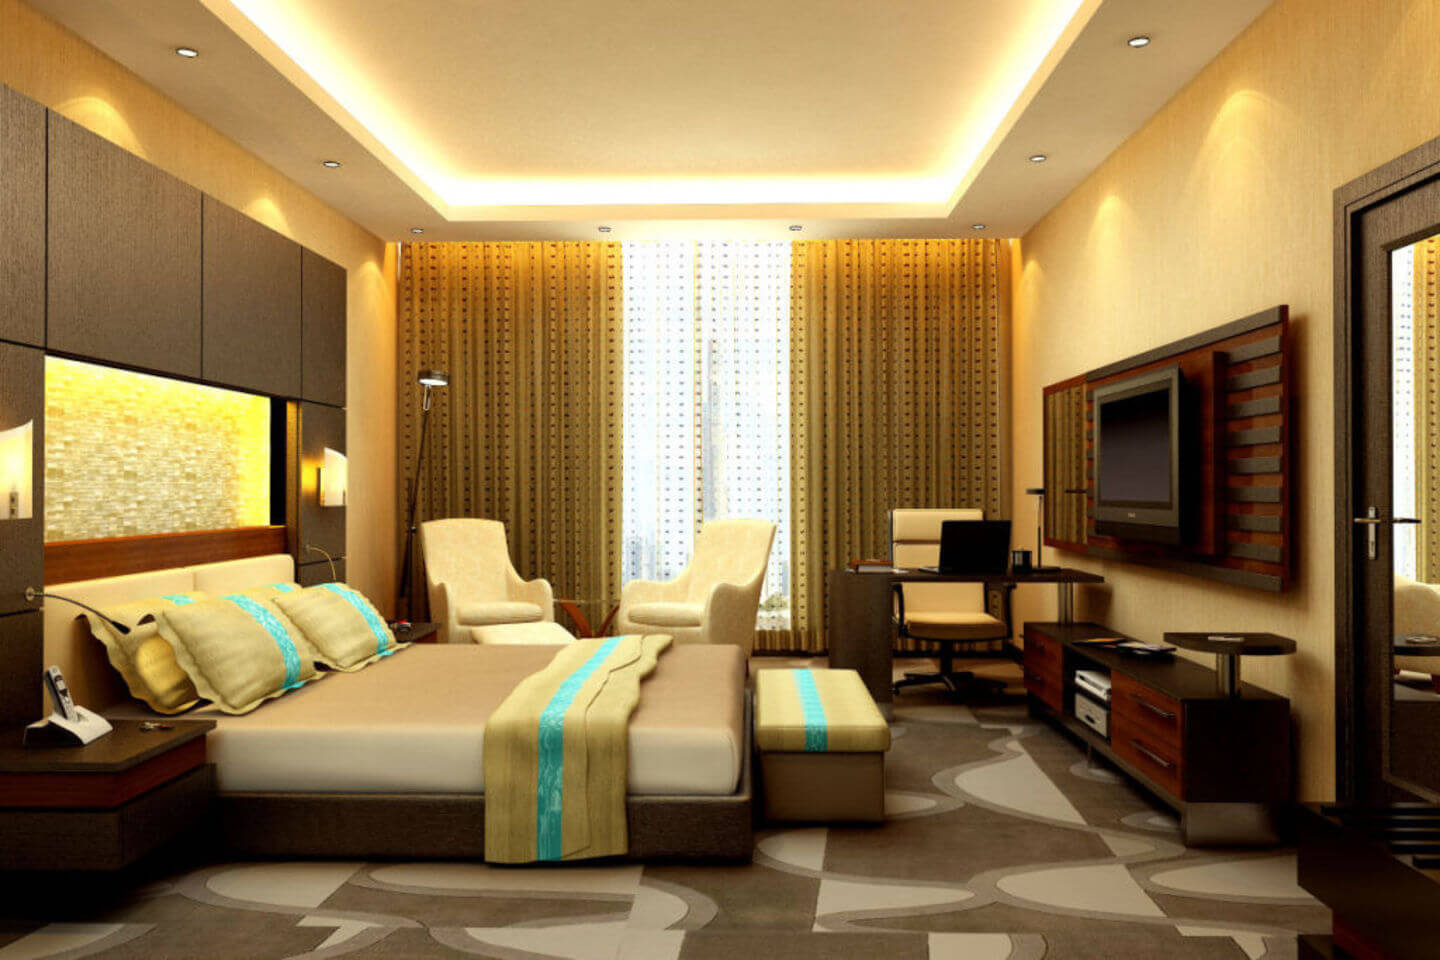 delhi-no1-brand-for-end-to-end-interiors-designs-bathroom-bedroom-living-in-delhi-new-delhi-india